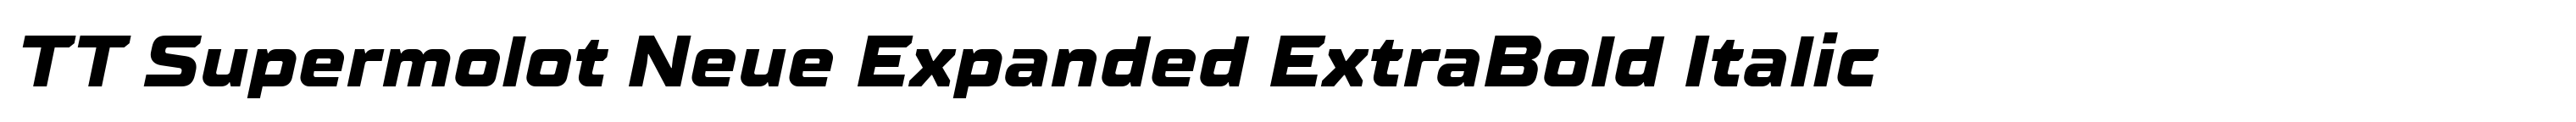 TT Supermolot Neue Expanded ExtraBold Italic